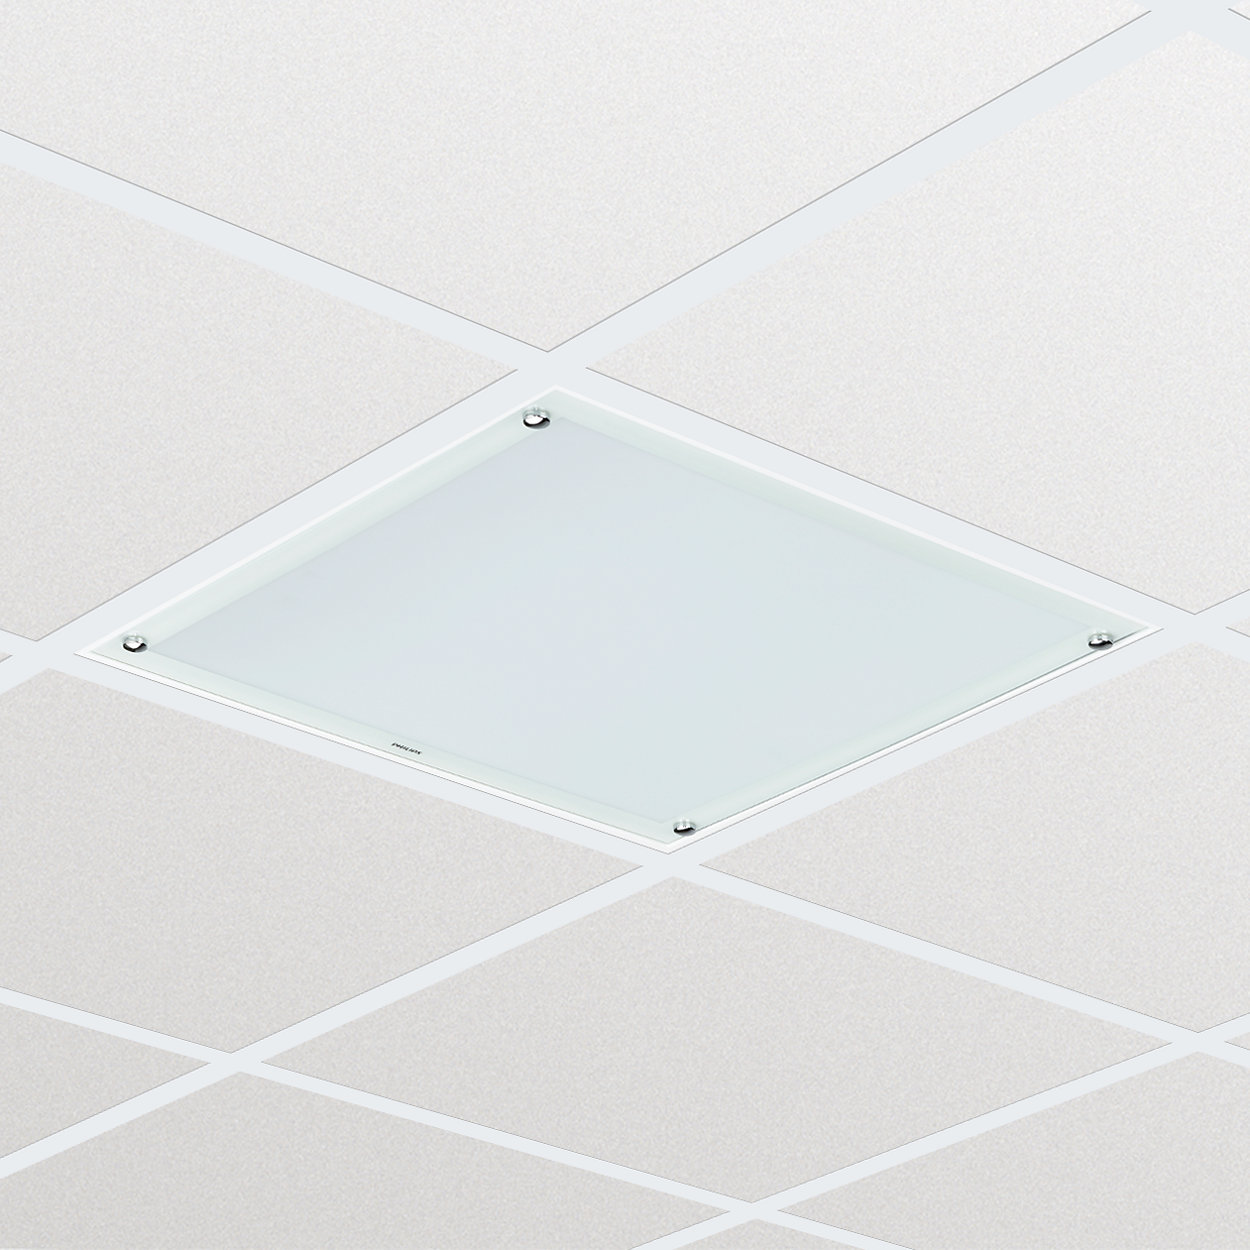 Luminaria LED para salas limpias CR250B: solución uniforme, de confianza, con buena relación calidad-precio